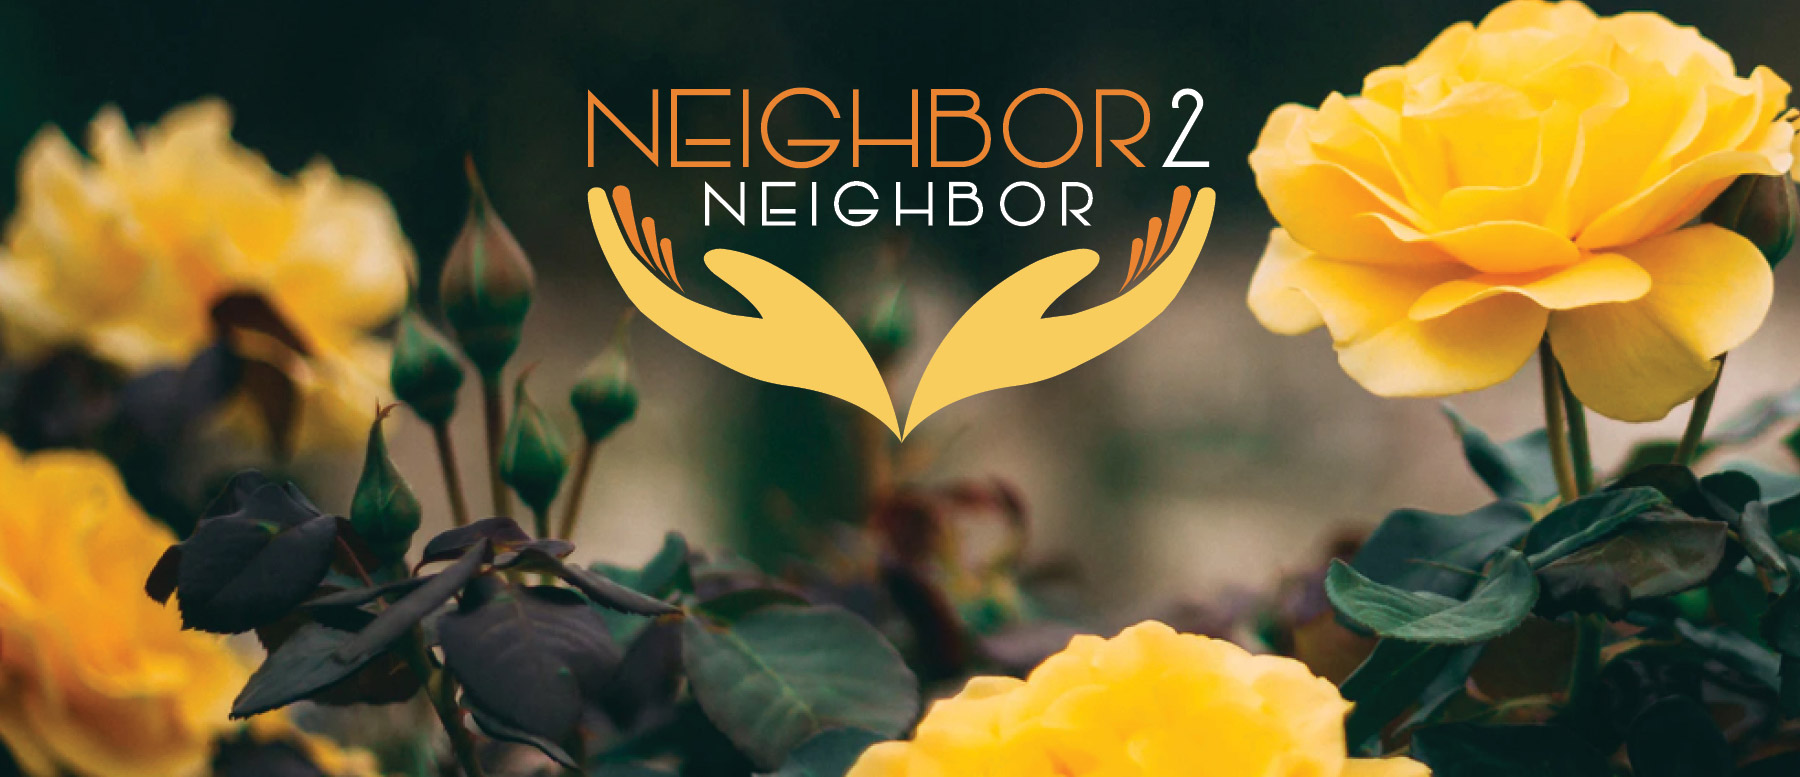 Neighbor to Neighbor